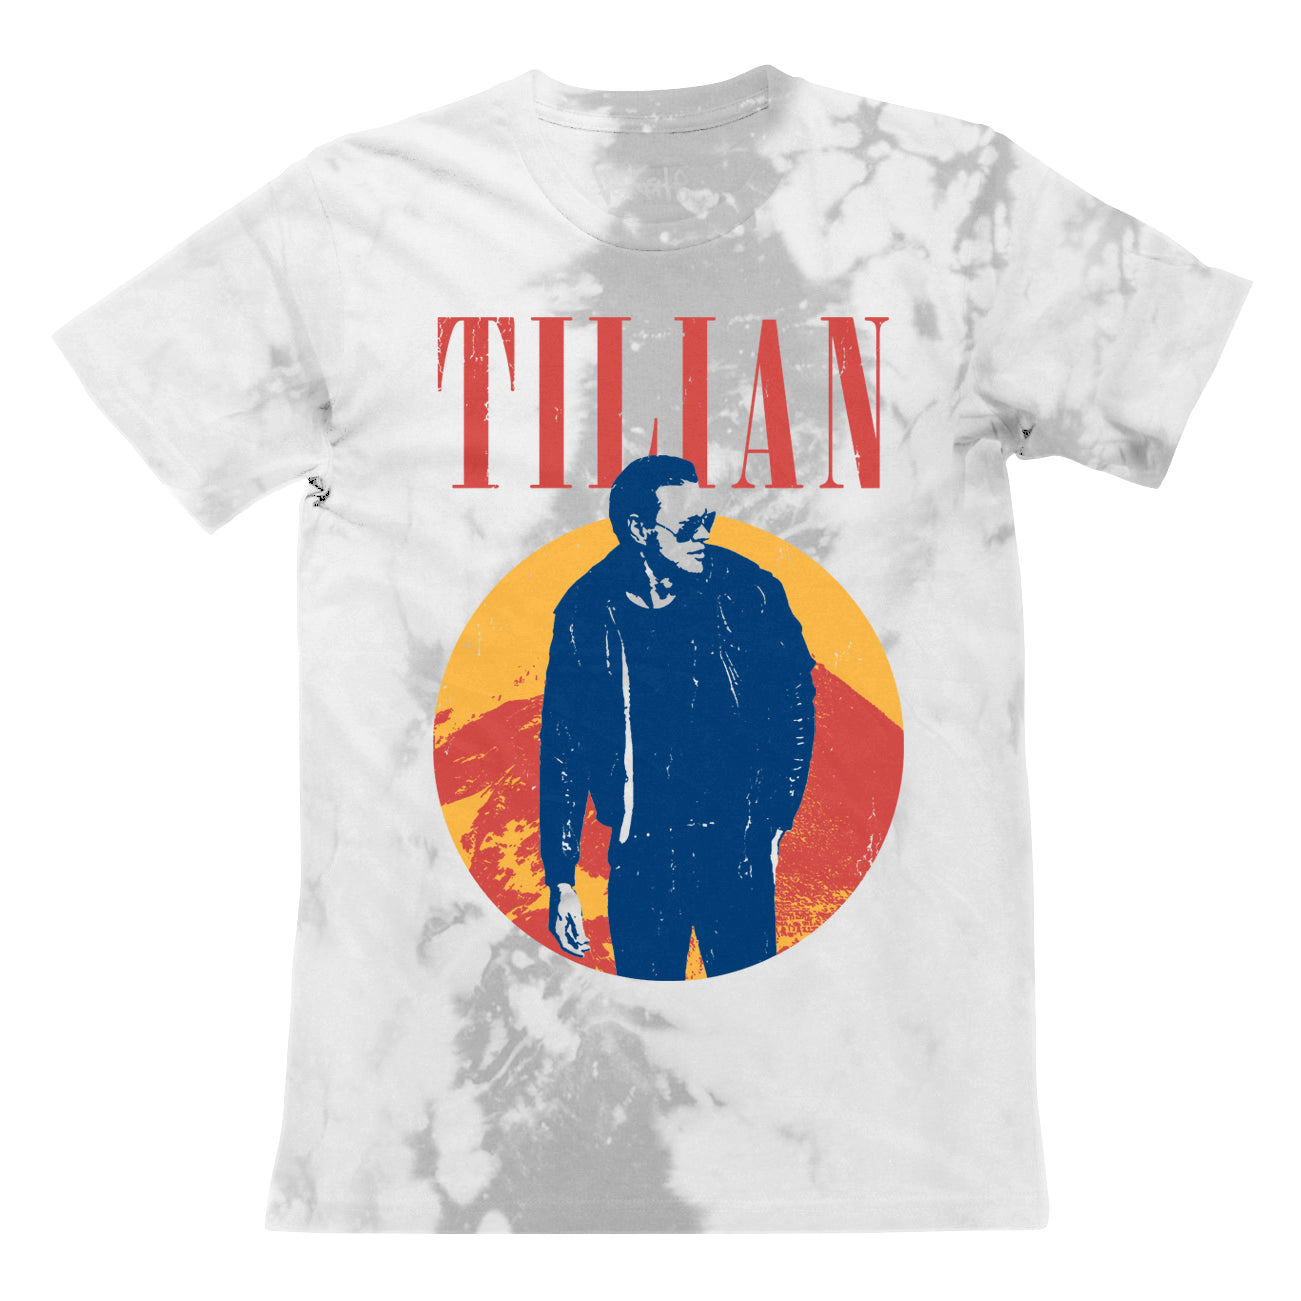 Tilian White/Grey Tie-Dye T-Shirt